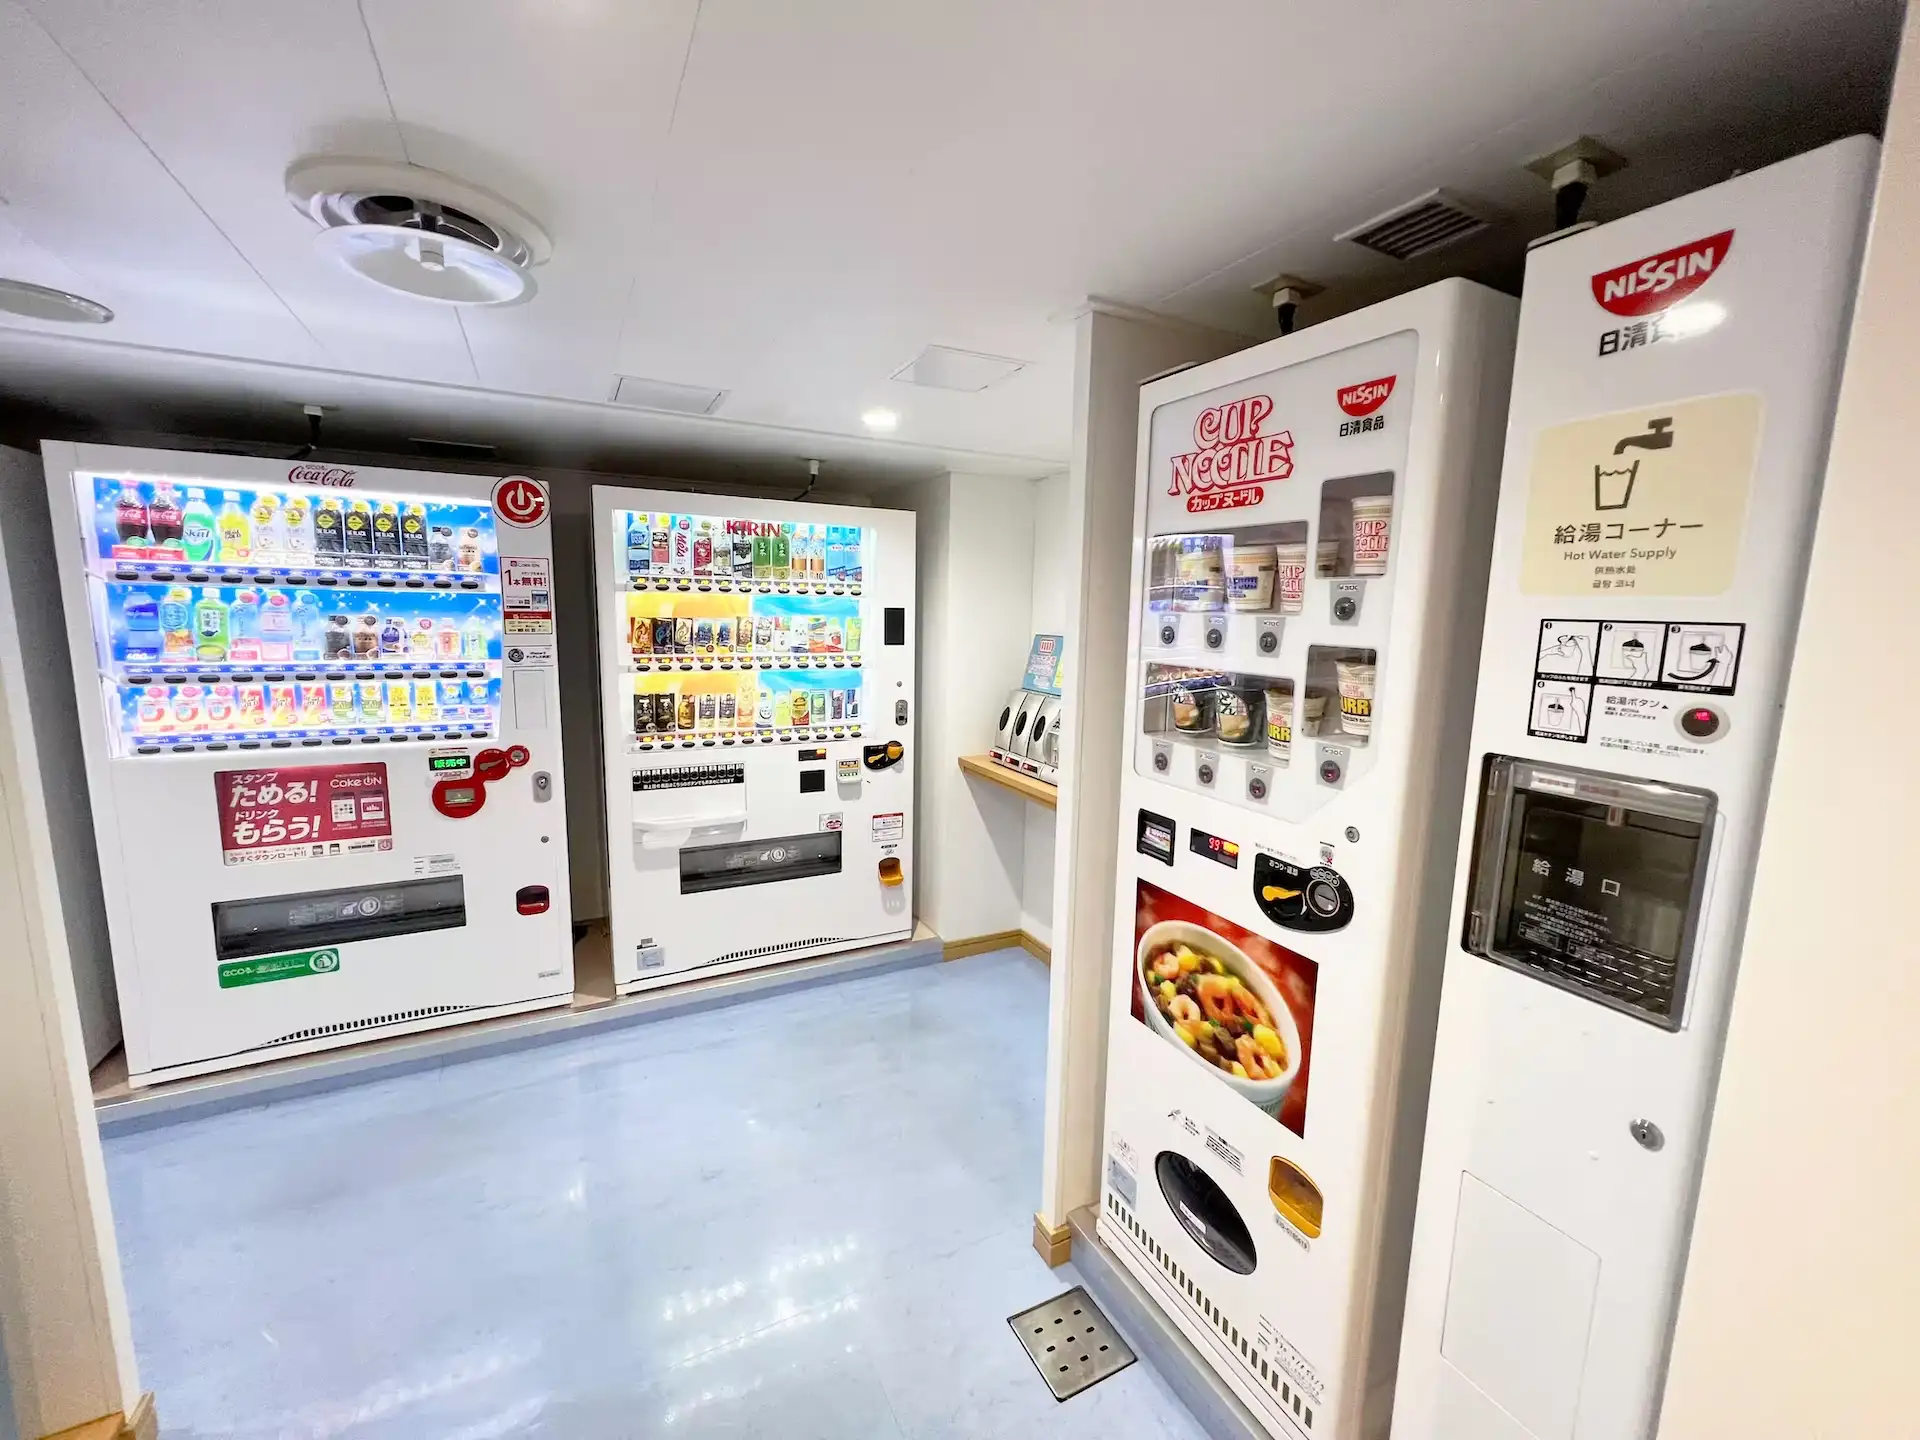 한큐 페리 Settsu 내부 자판기 코너